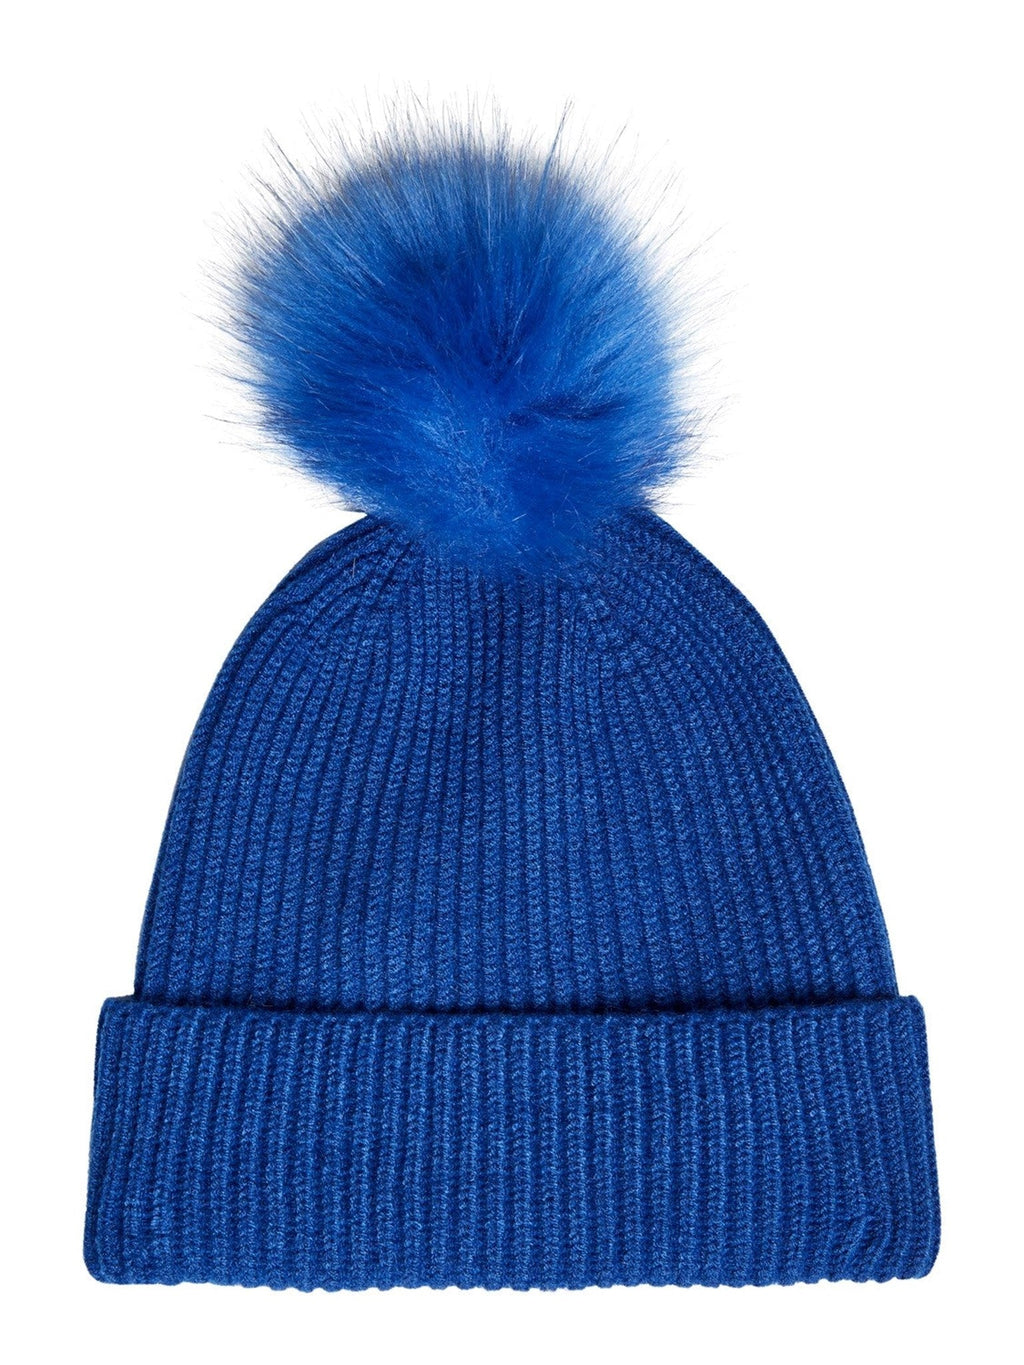 LIF pom skrybėlė - mėlyna